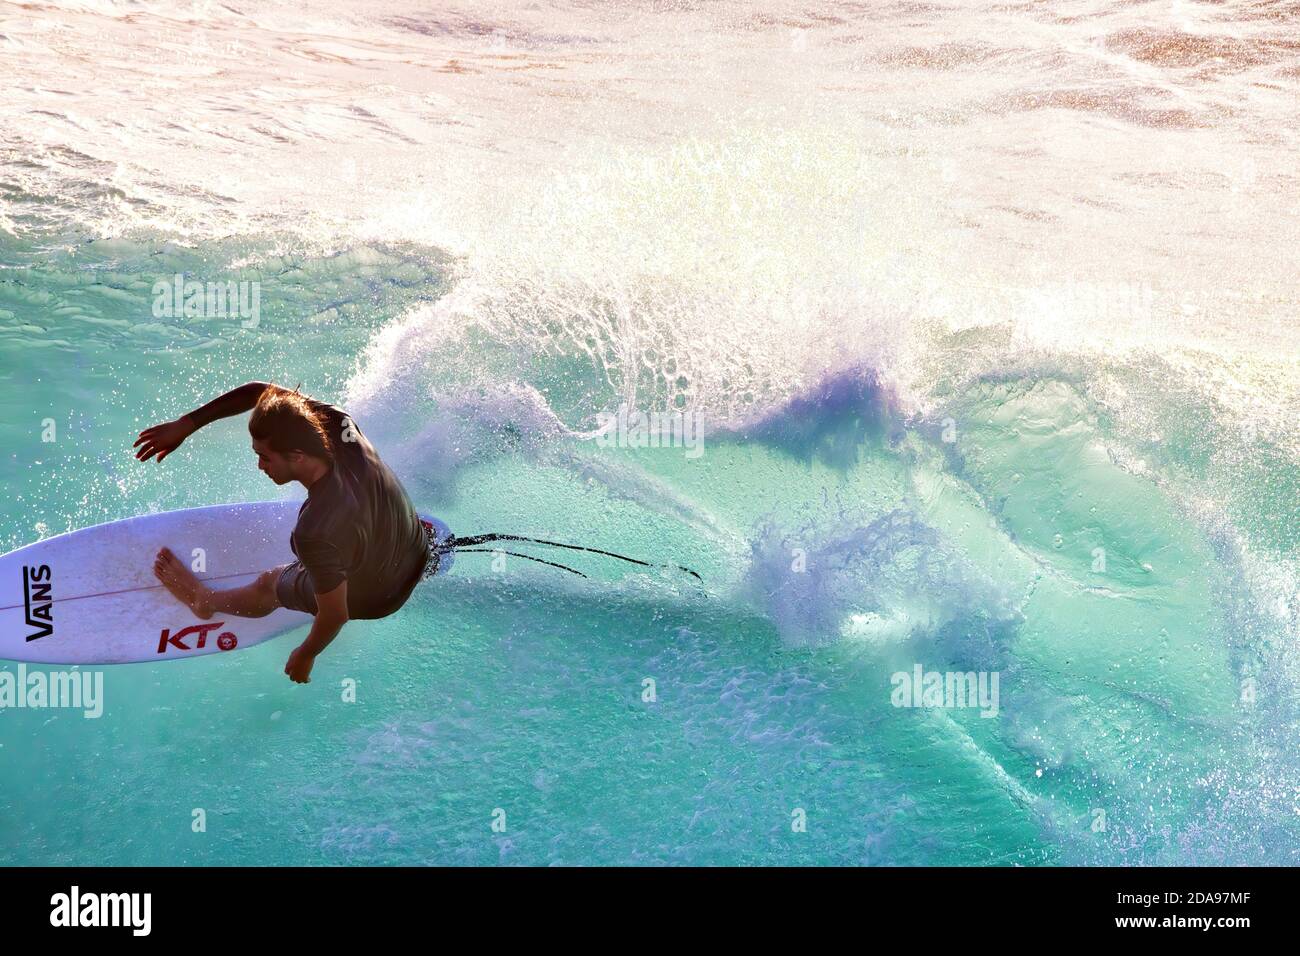 Nahaufnahme eines hochenergetischen, silhouettierten Surfers auf Maui. Stockfoto